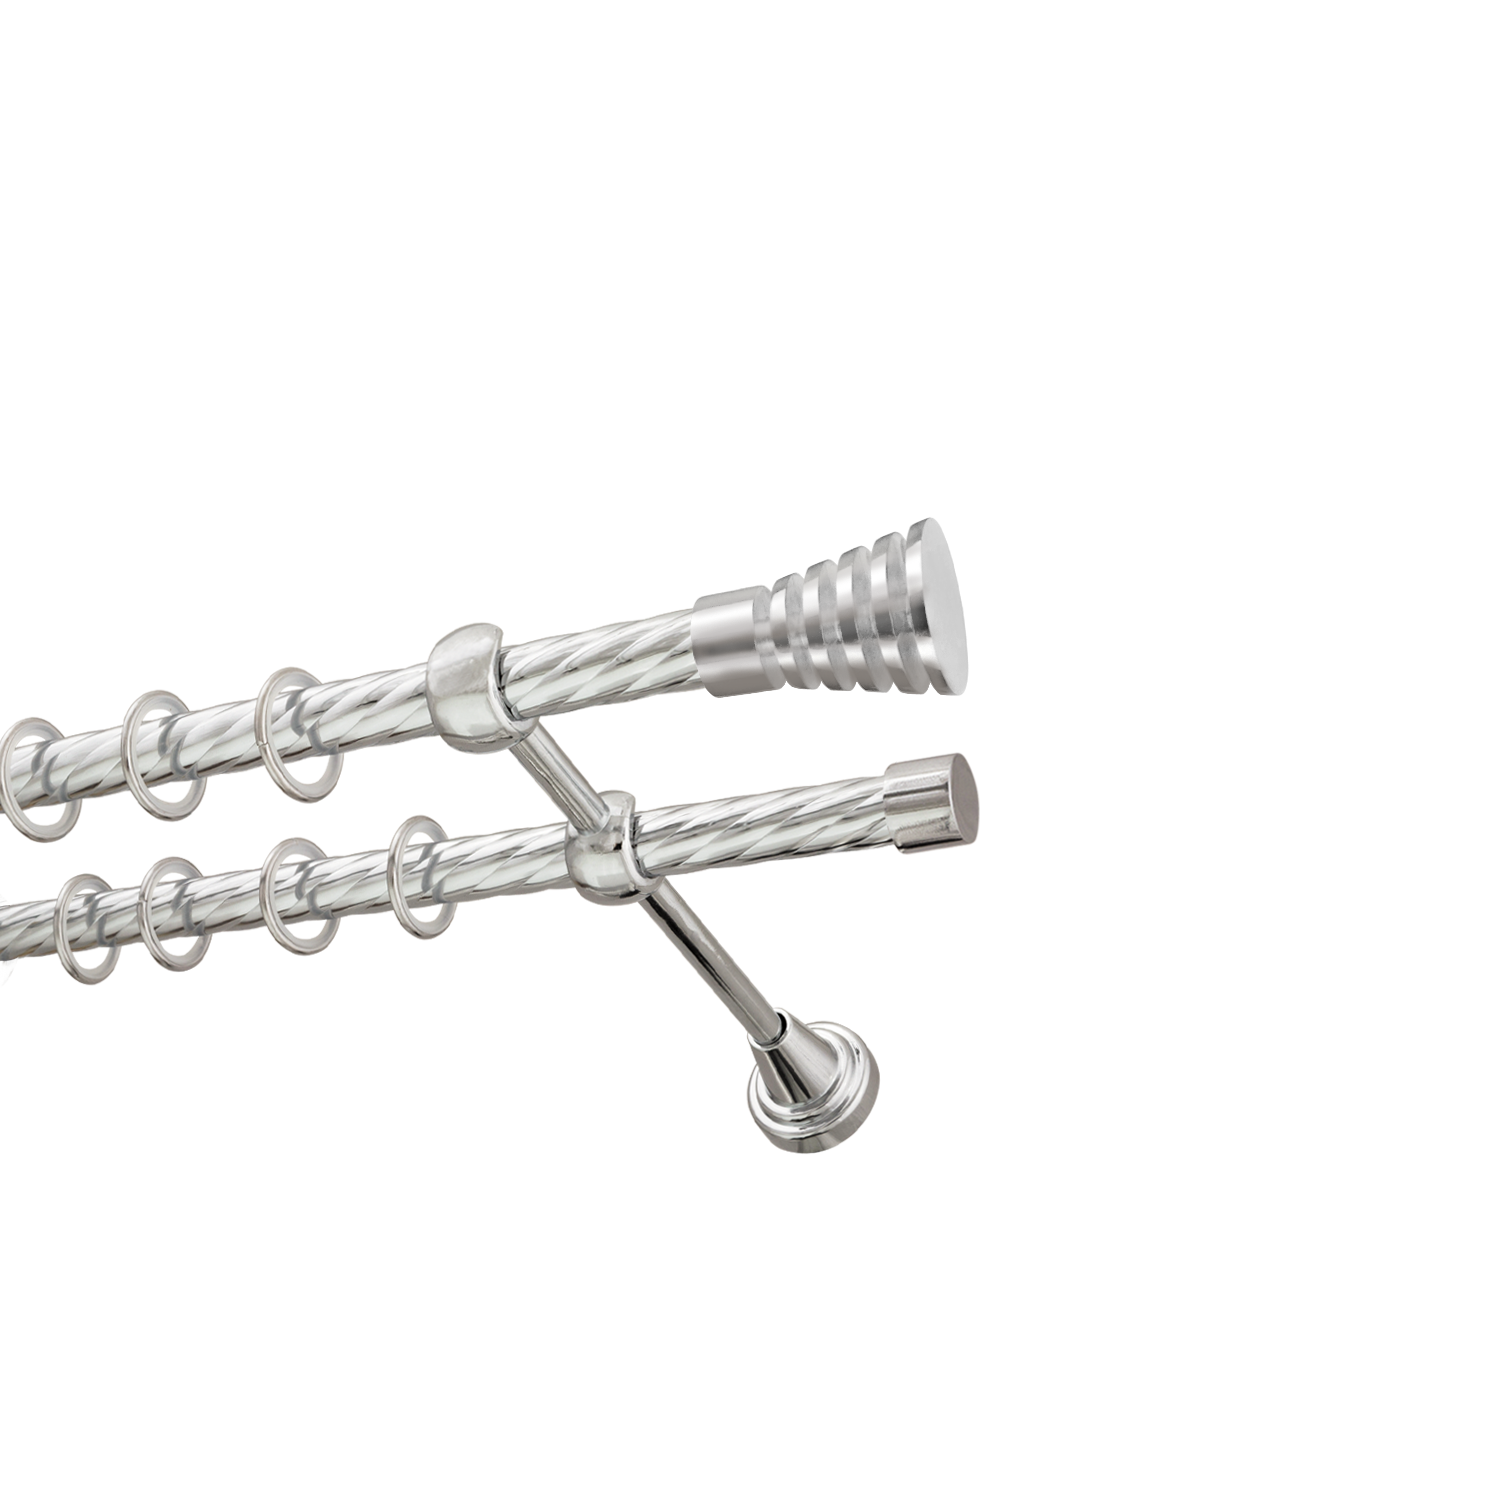 Металлический карниз для штор Верона, двухрядный 16/16 мм, серебро, витая штанга, длина 200 см - фото Wikidecor.ru